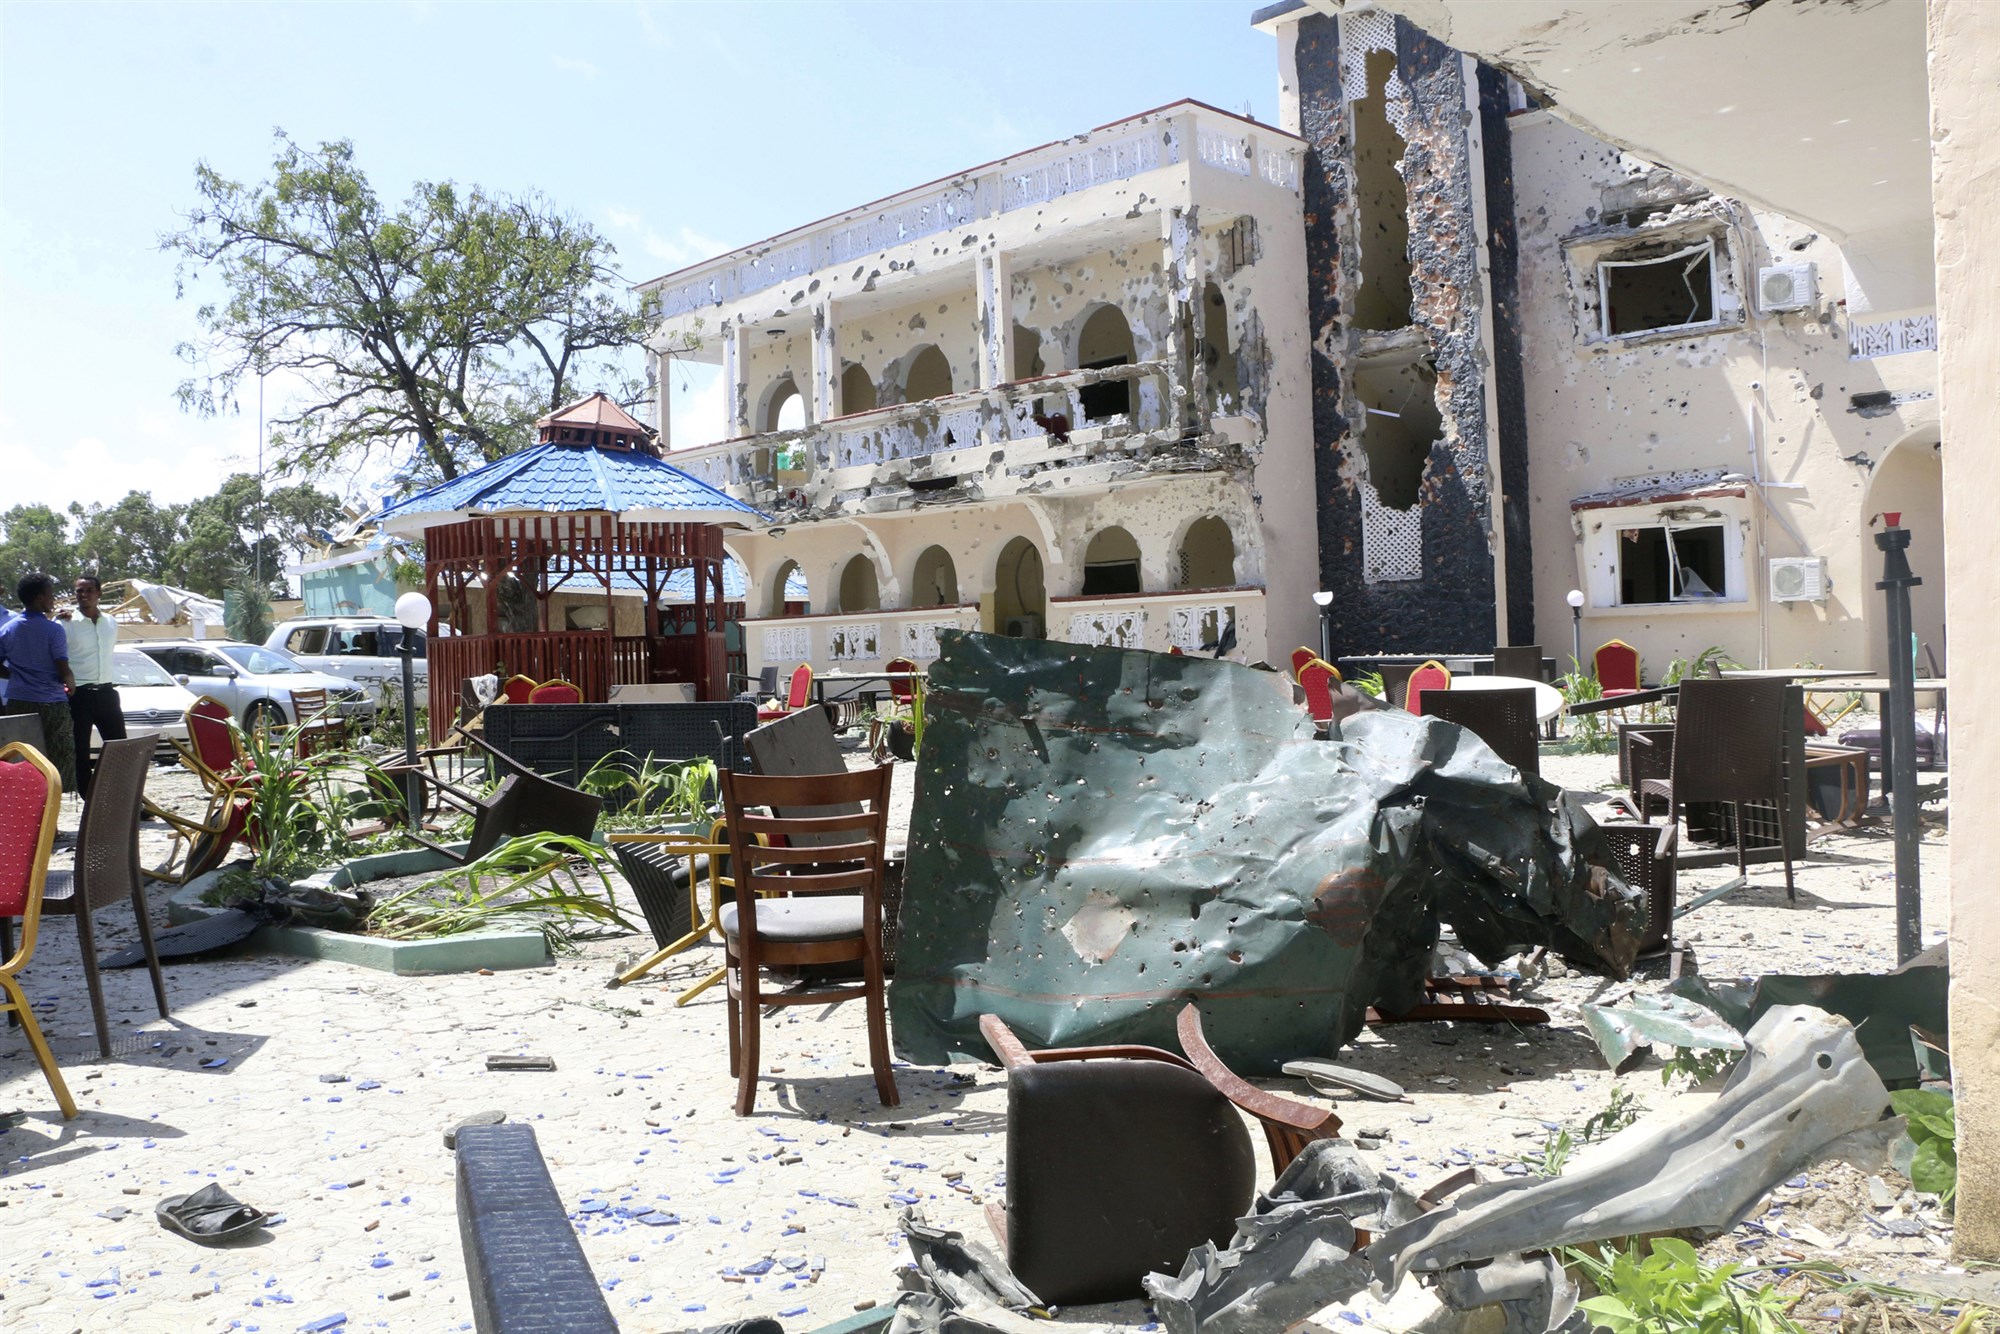 27 killed and 56 injured in Islamic terrorist attack in Kismayo, Somalia